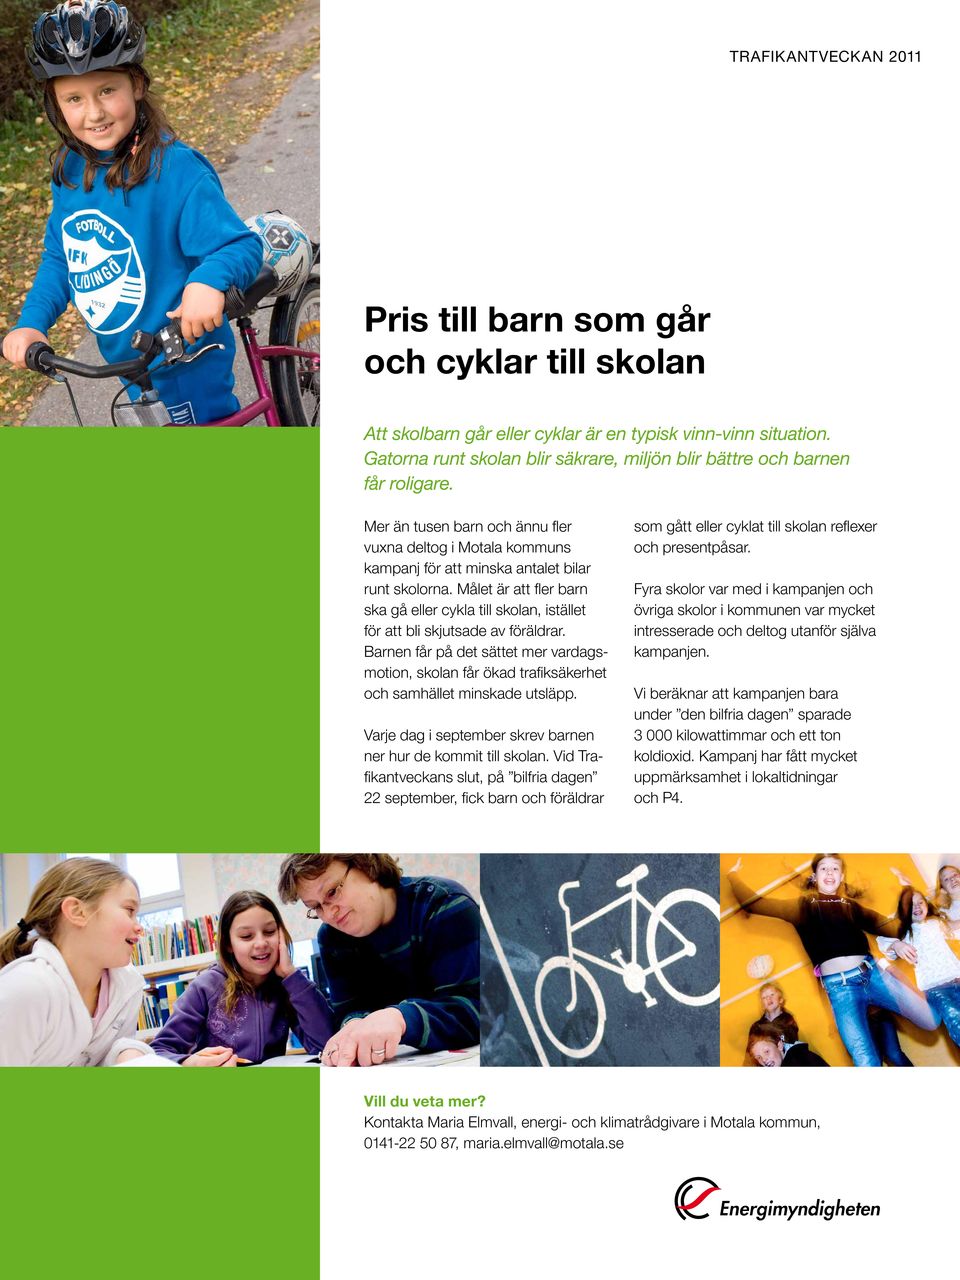 Målet är att fler barn ska gå eller cykla till skolan, istället för att bli skjutsade av föräldrar.